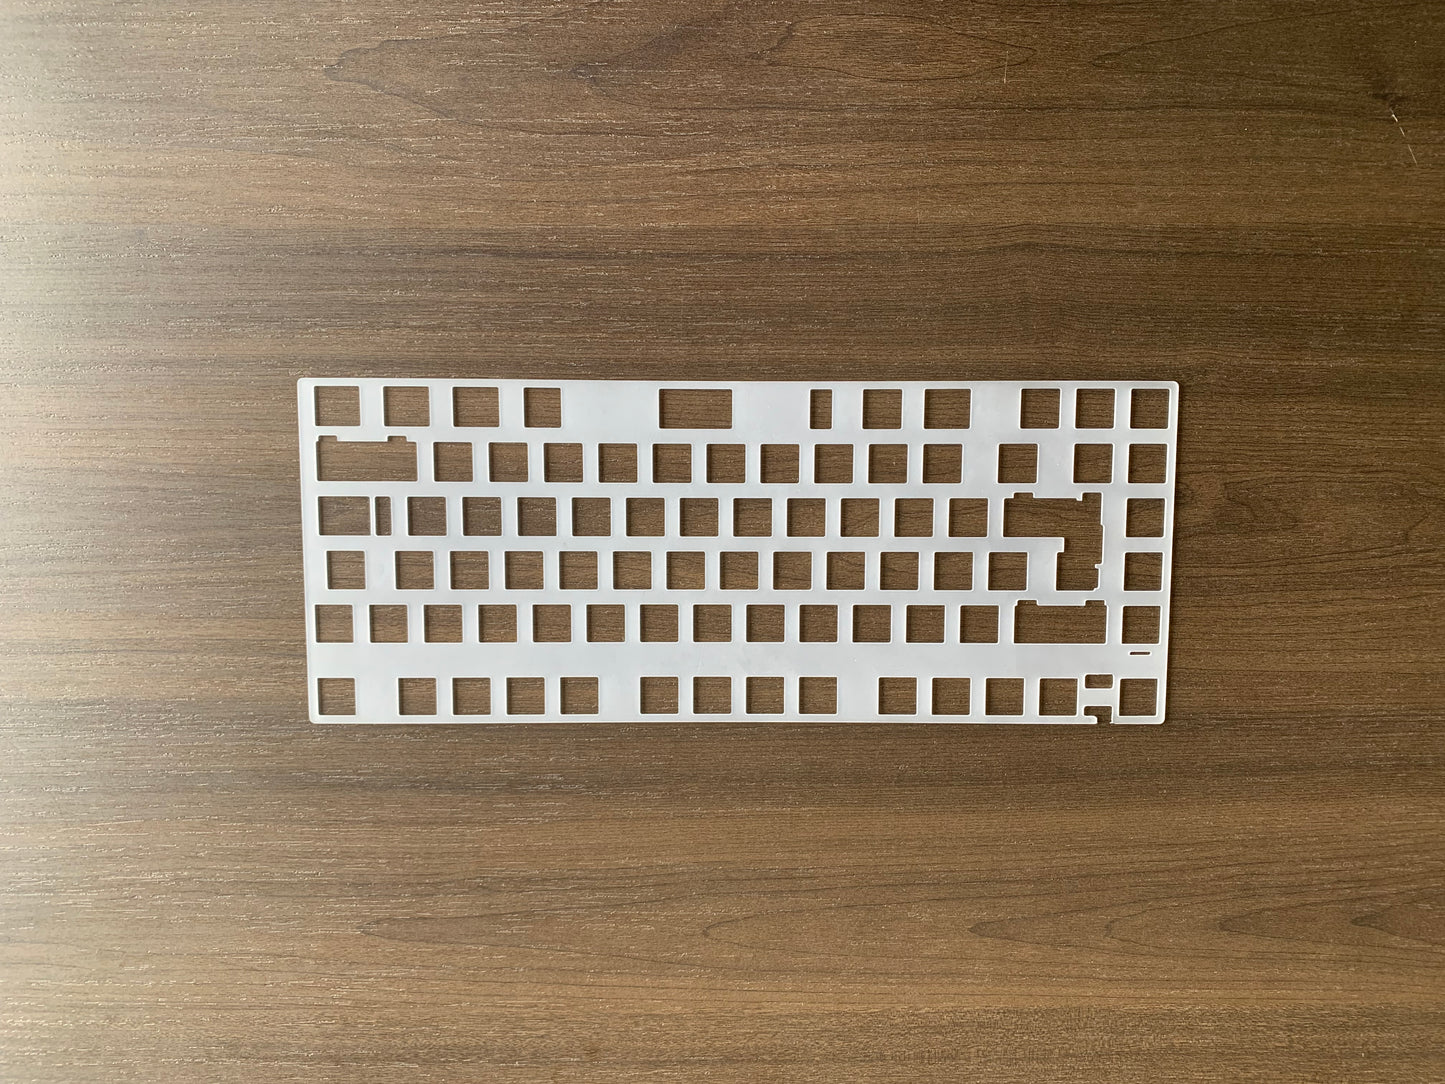 
                  
                    (Group Buy) Jris75 Keyboard Addons
                  
                